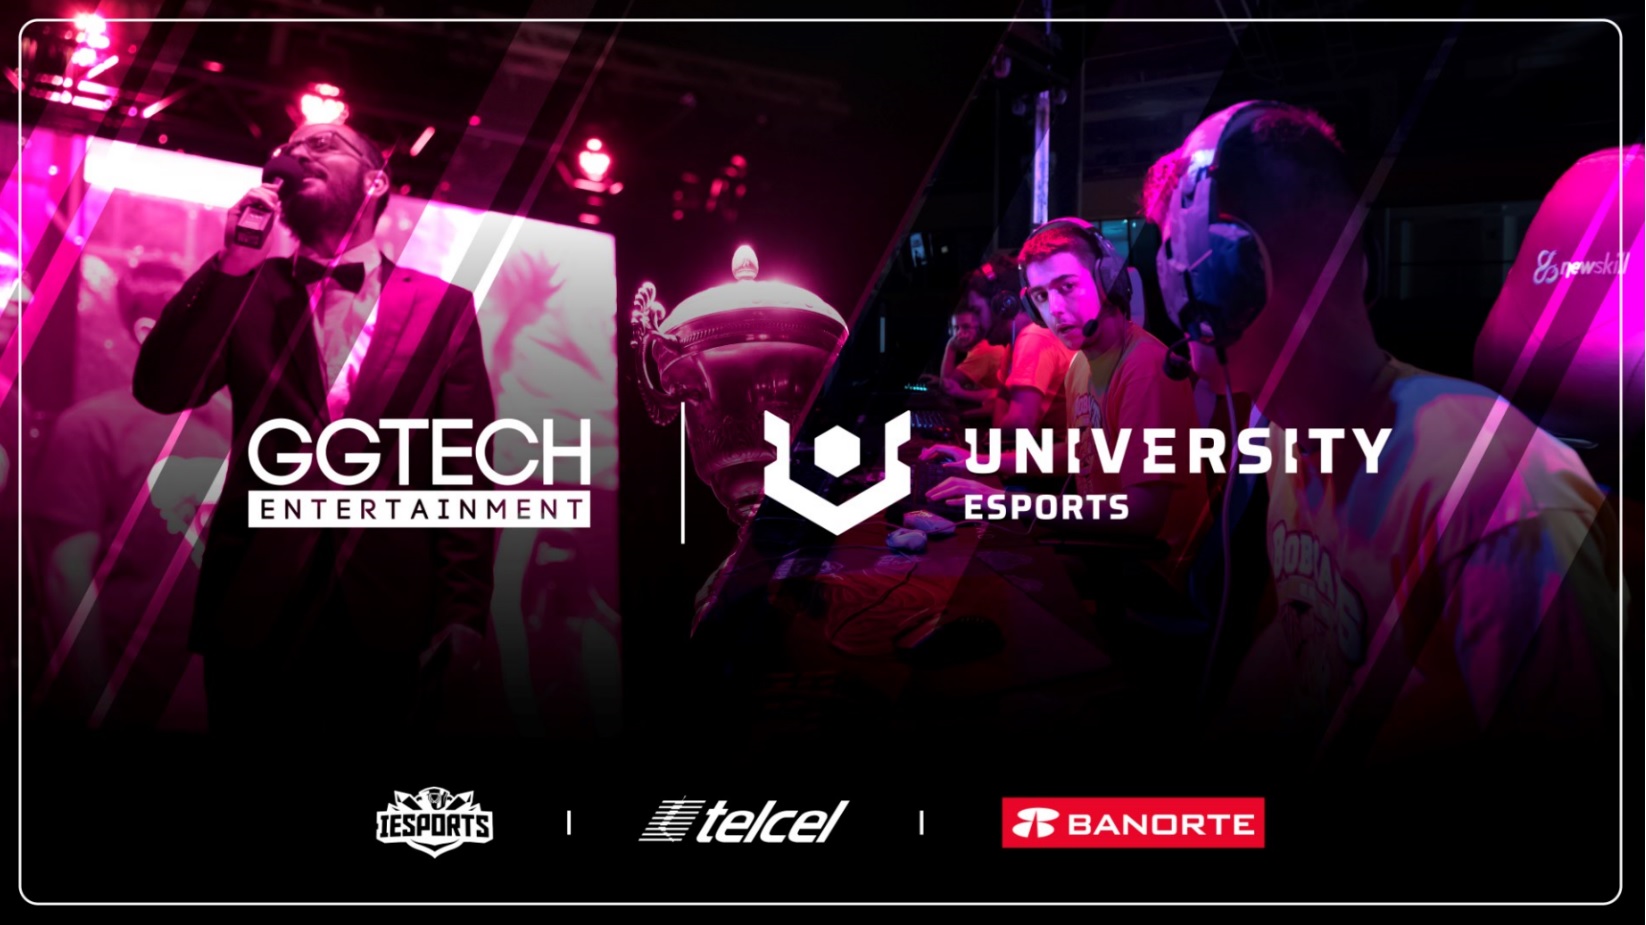 GGTech Entertainment anunció el inicio de la primera edición de sus ligas universitarias de esports, UNIVERSITY Esports, con un total de 4.360 alumnos.